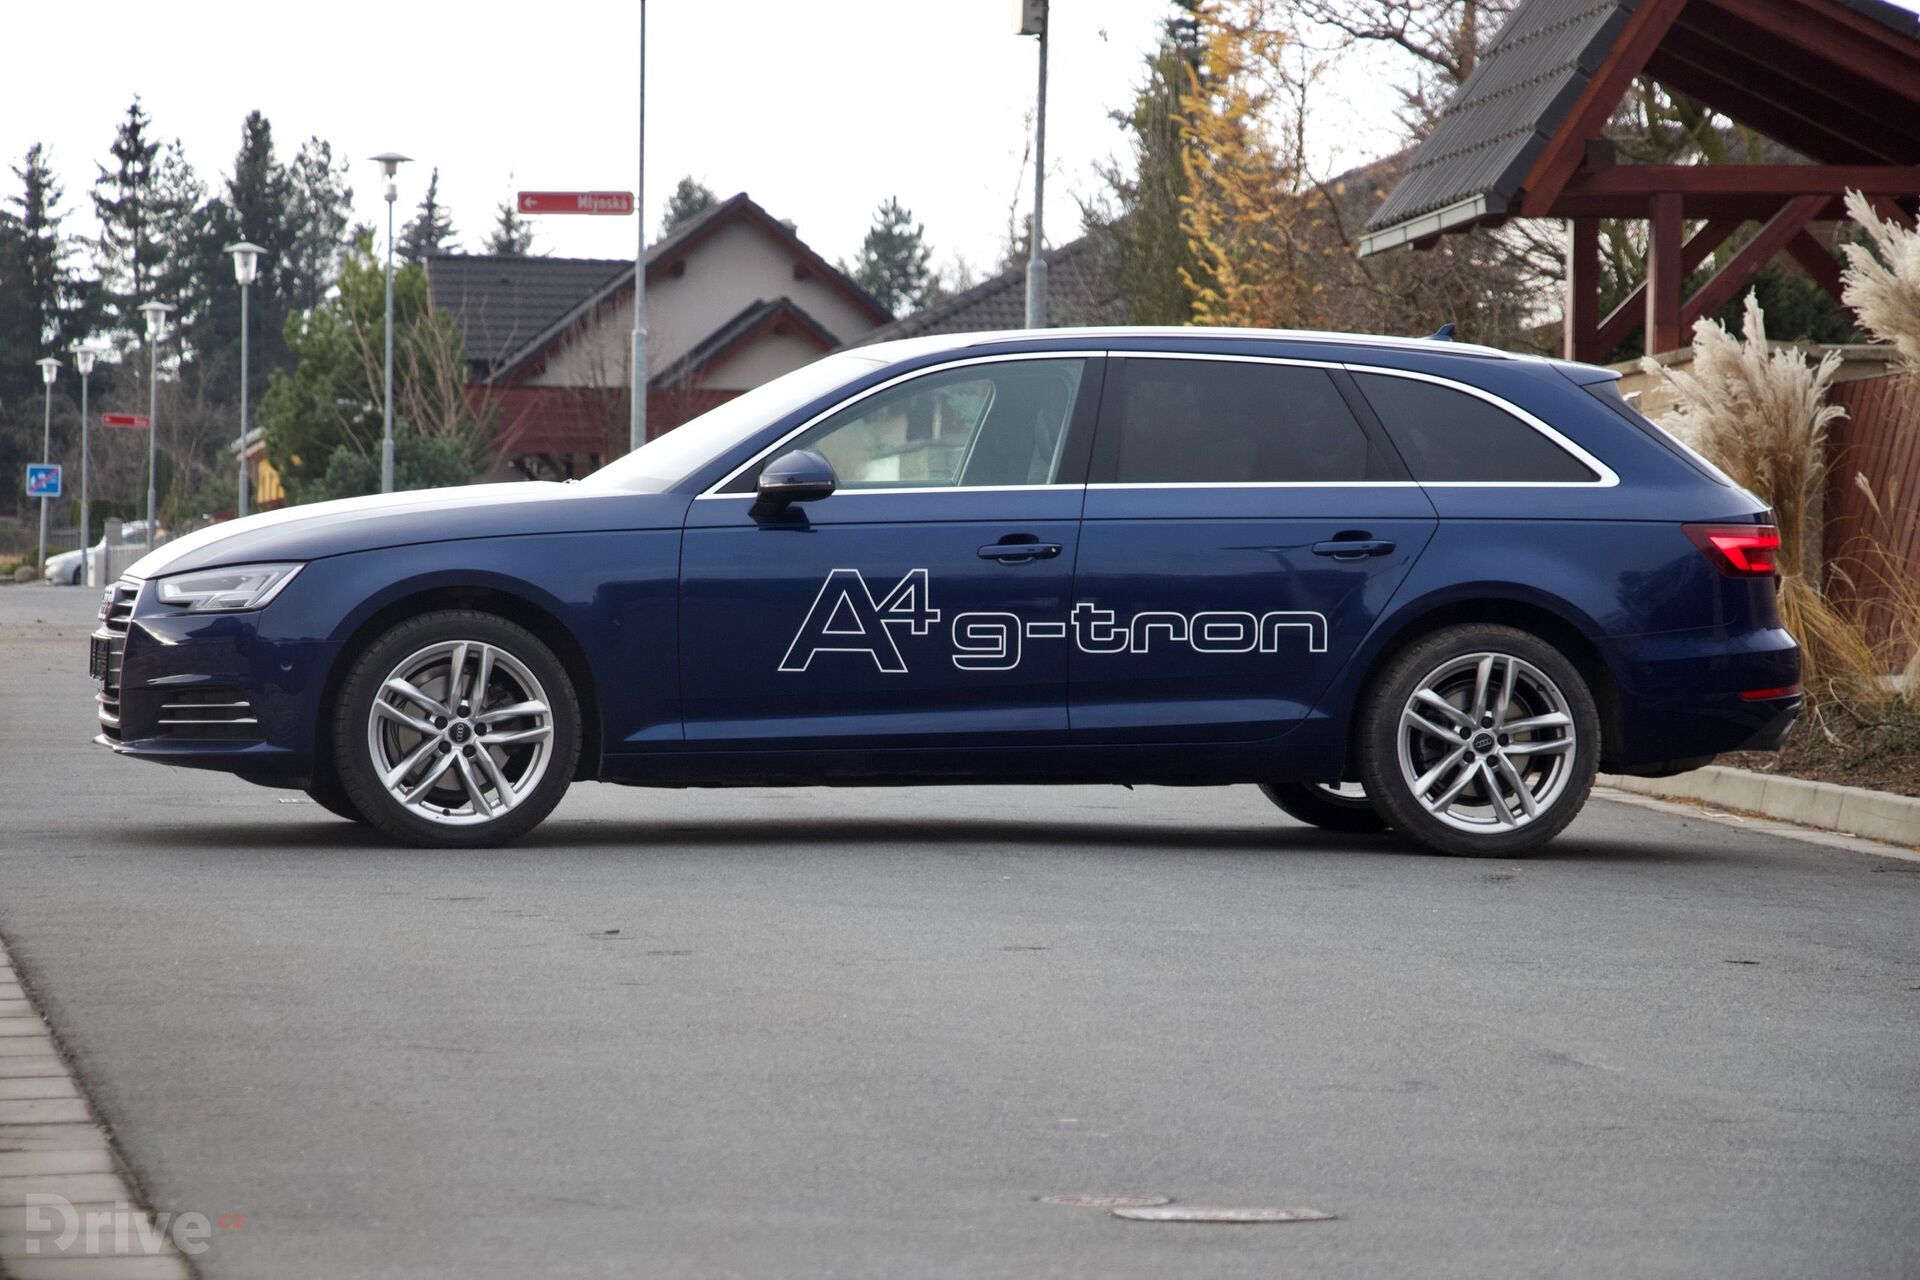 Audi A4 g-tron (2015)